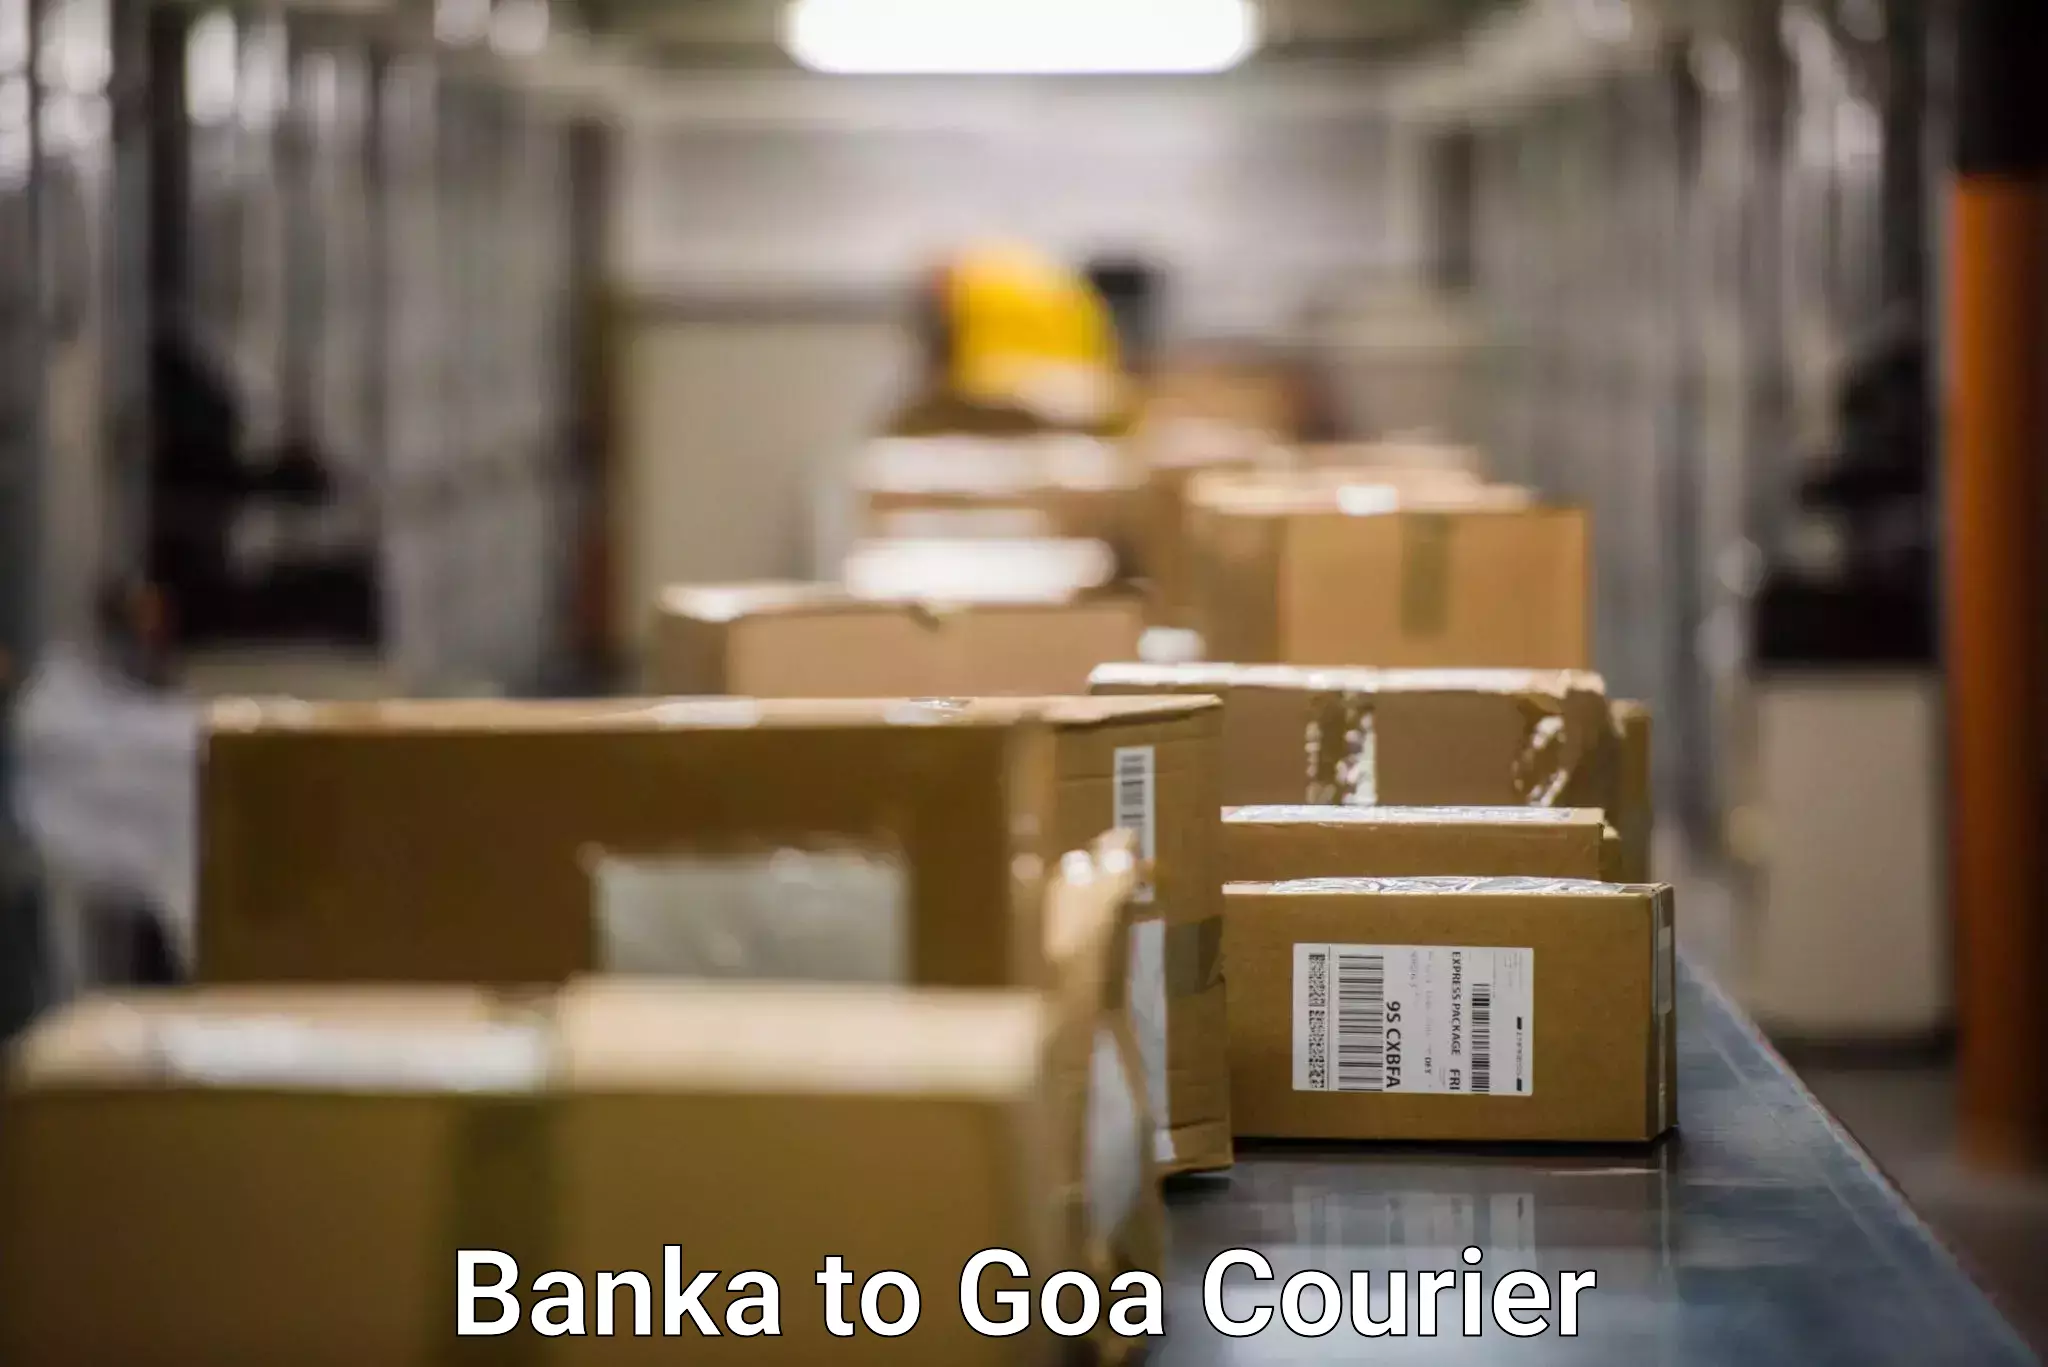 Customer-centric shipping Banka to Margao